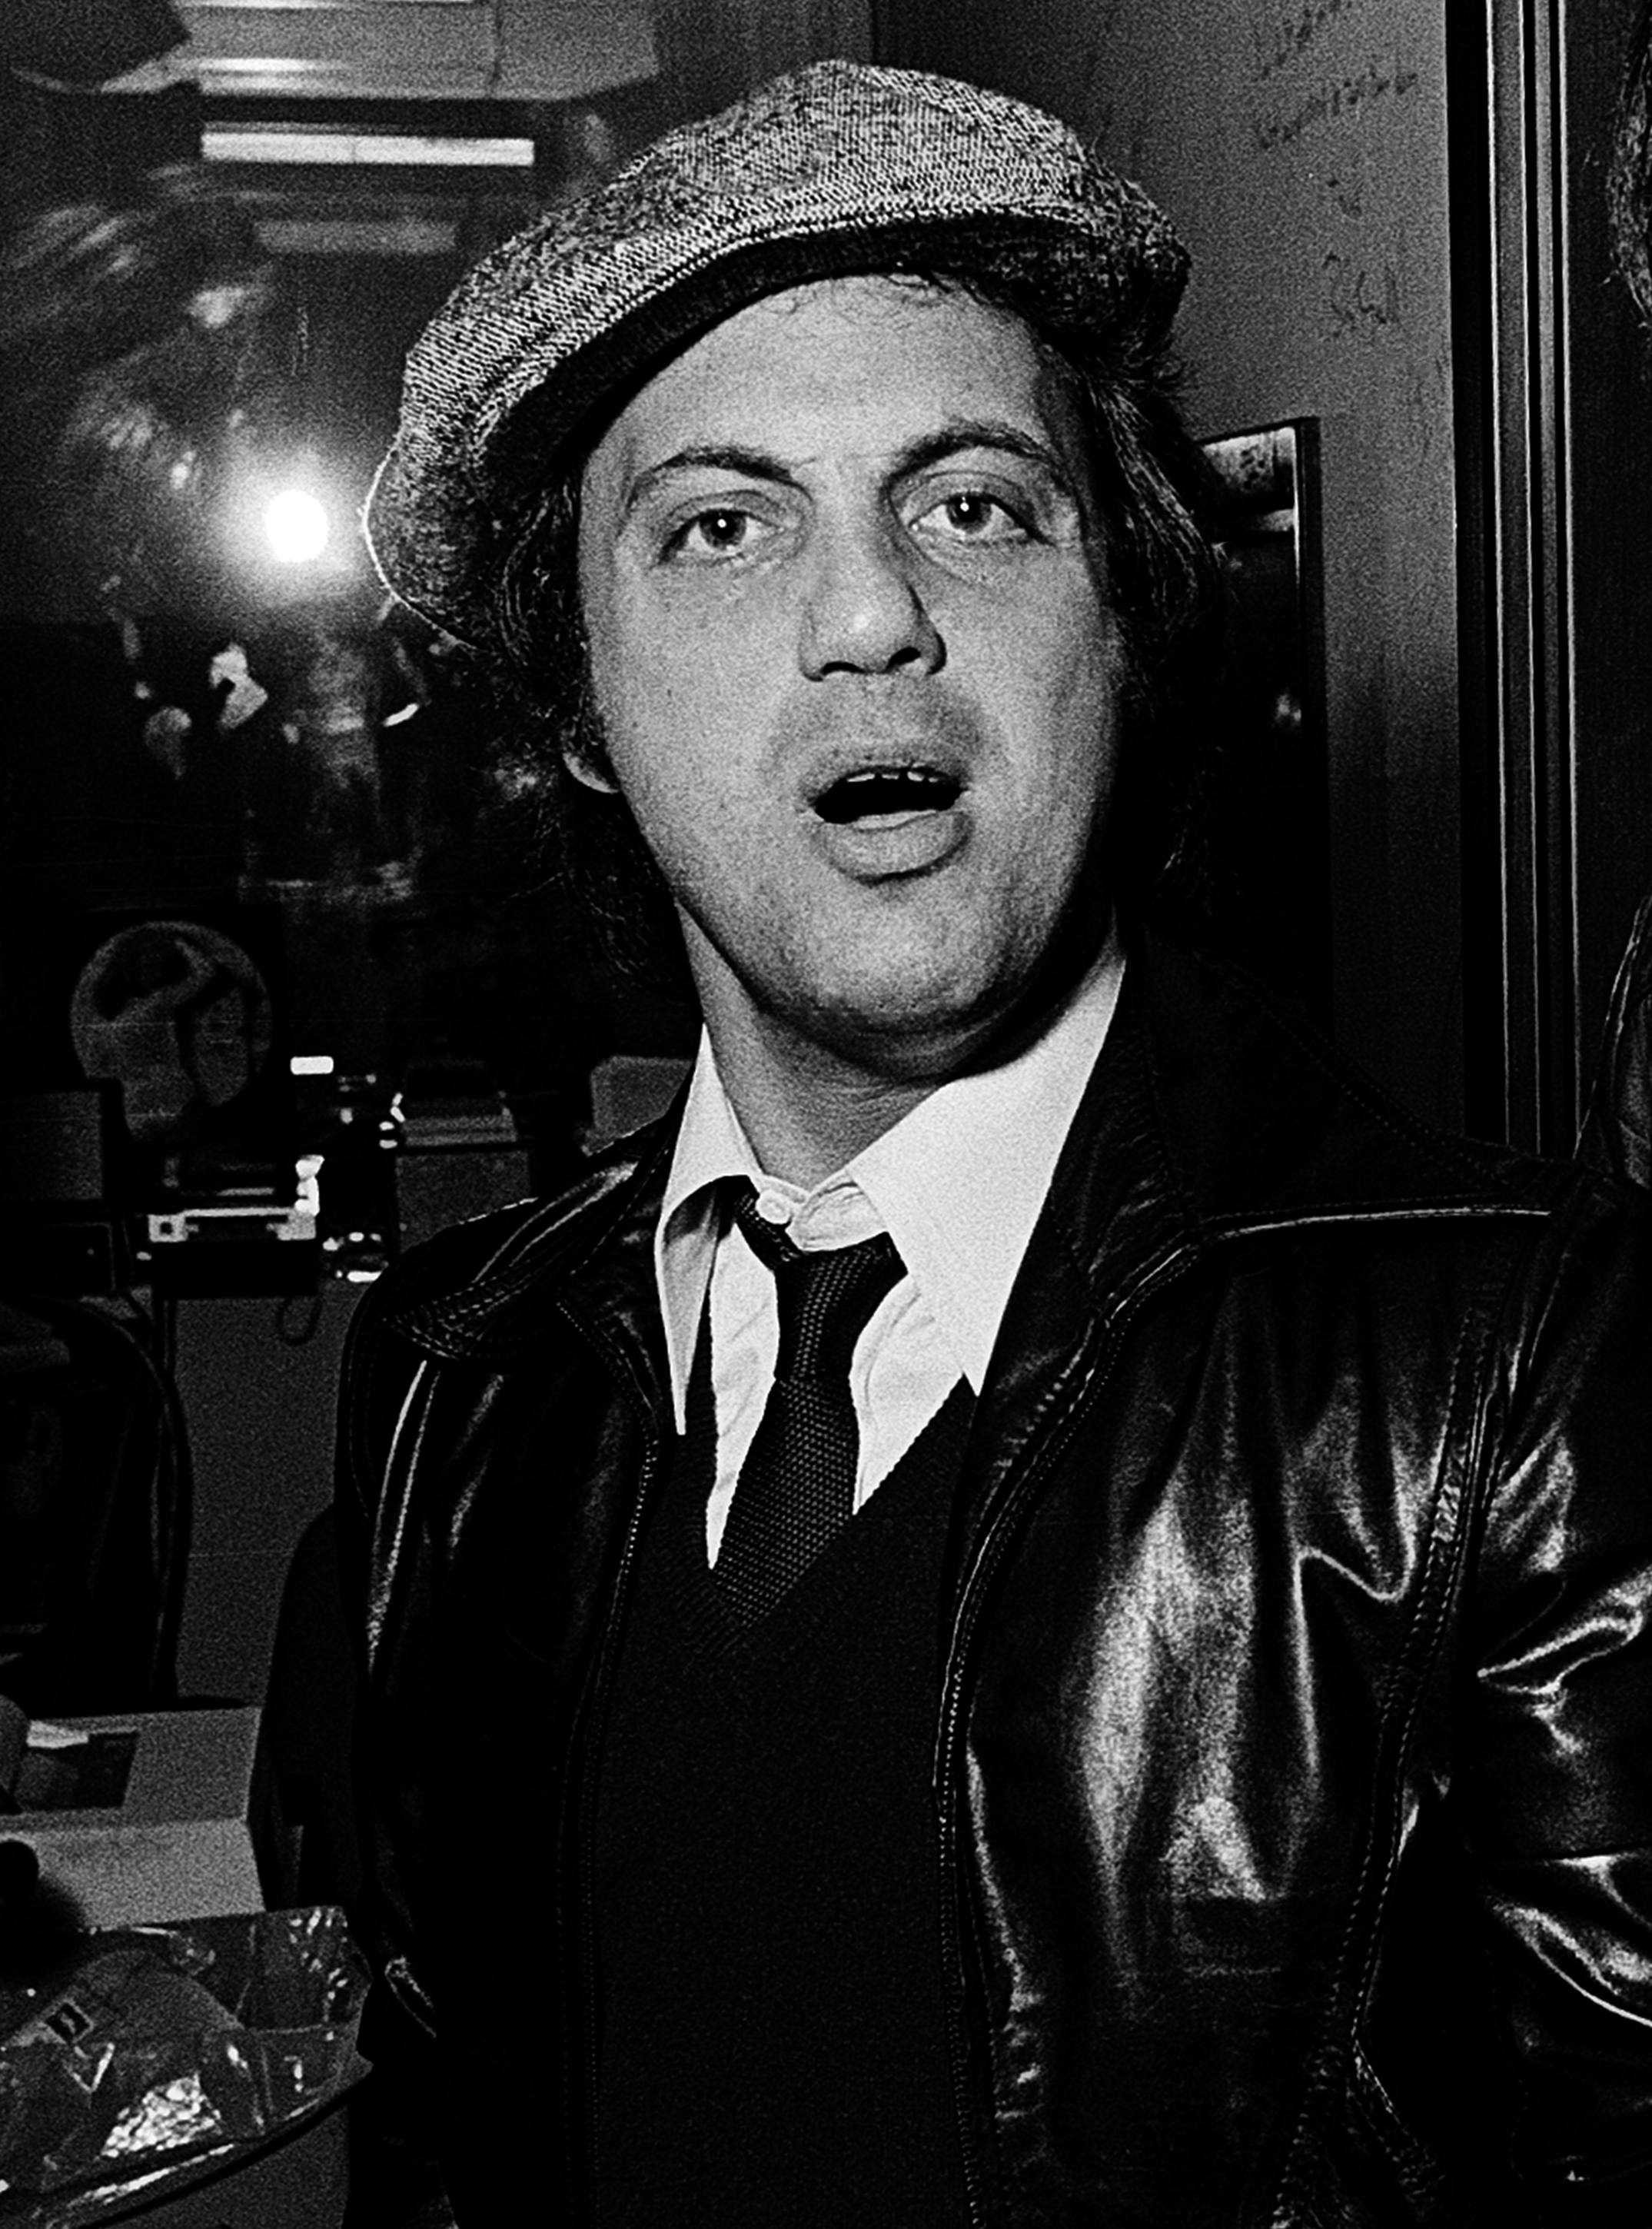 Billy Joel est photographié lors de sa visite au stade de radio WKLS 96 Rock vers 1979 à Atlanta, Géorgie | Source : Getty Images